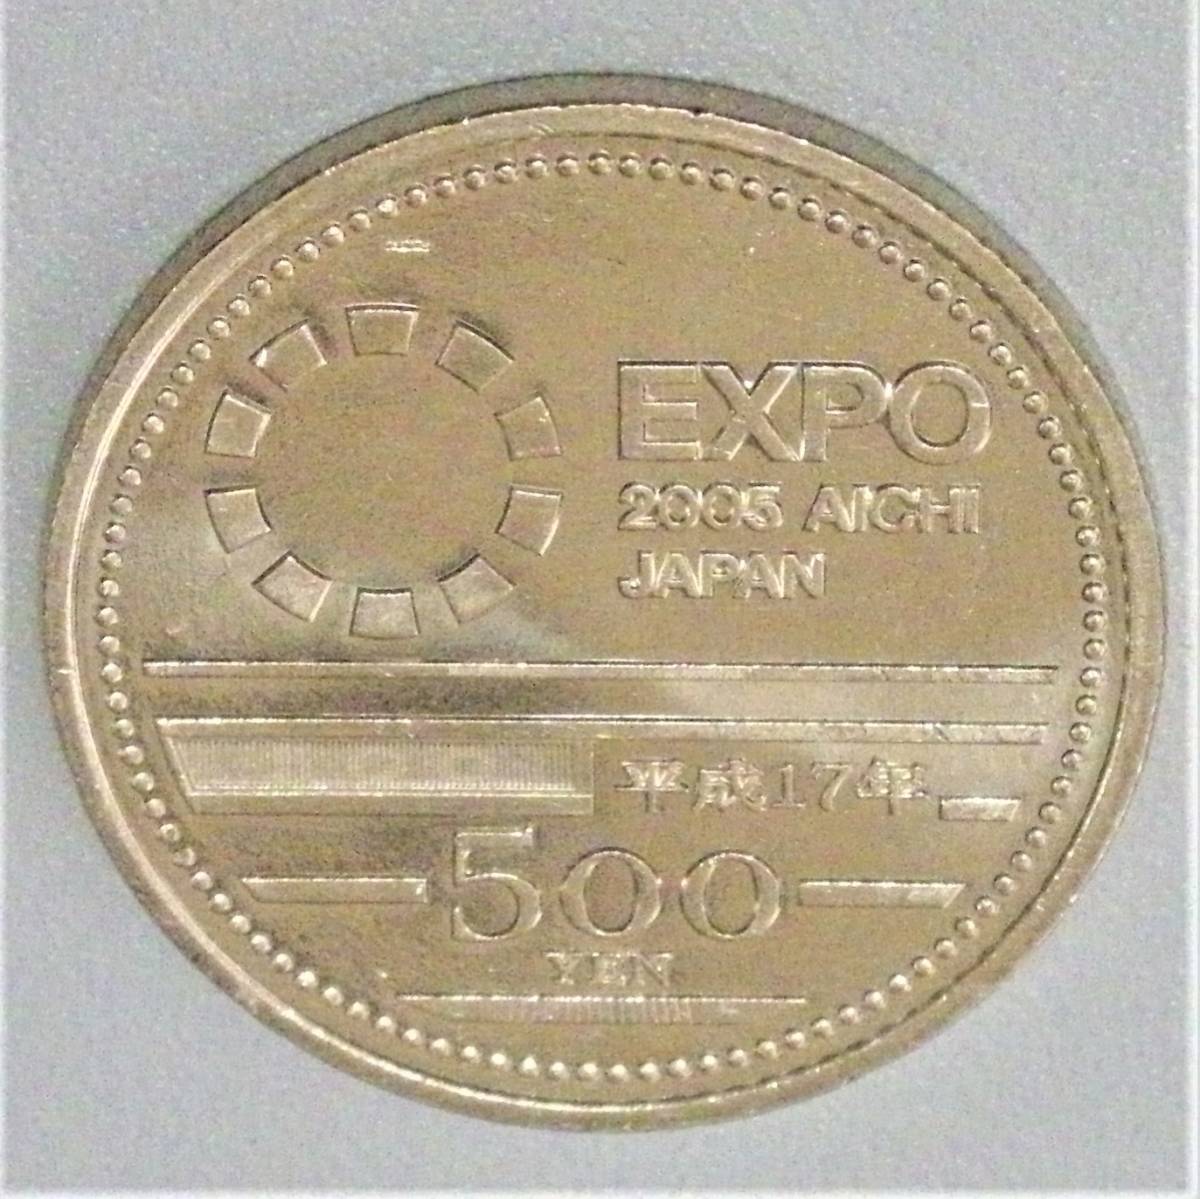 選ぶなら 2005年 日本国際博覧会記念 愛知万博 500円ニッケル黄銅貨 平成17年 美品